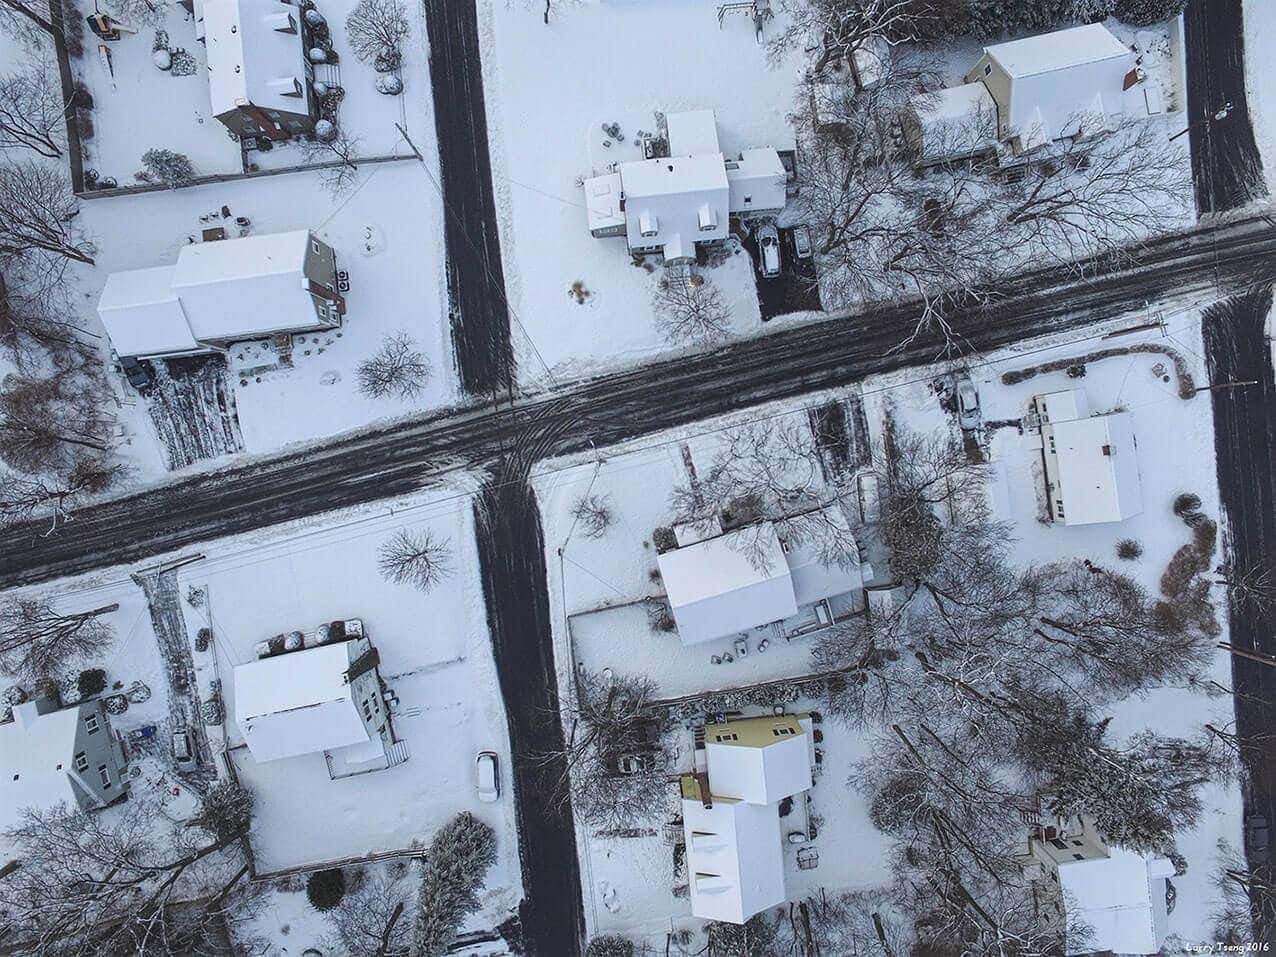 Carreteras con nieve